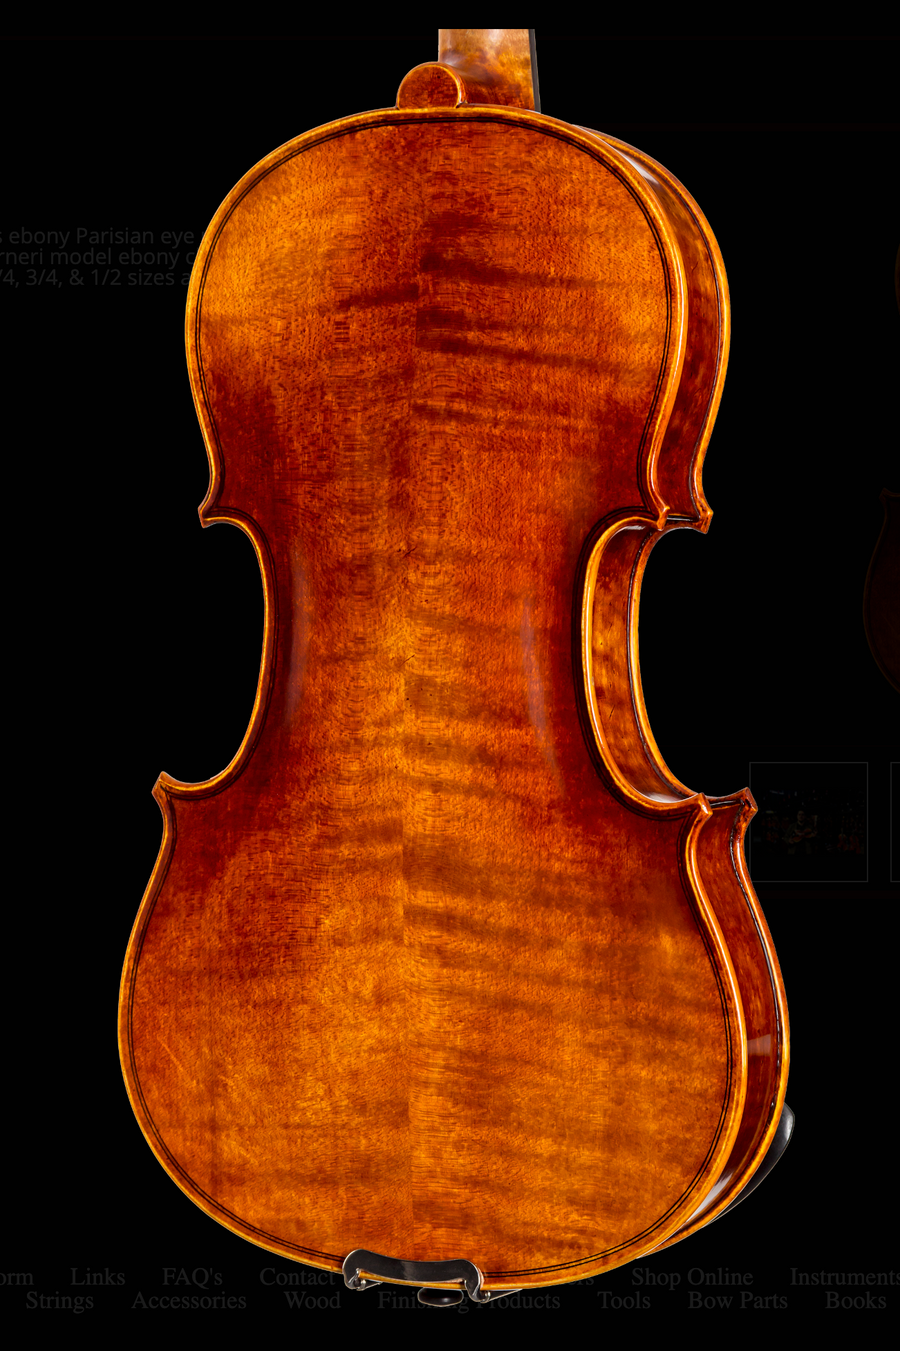 Evah Pirazzi Viola C String & Accessories